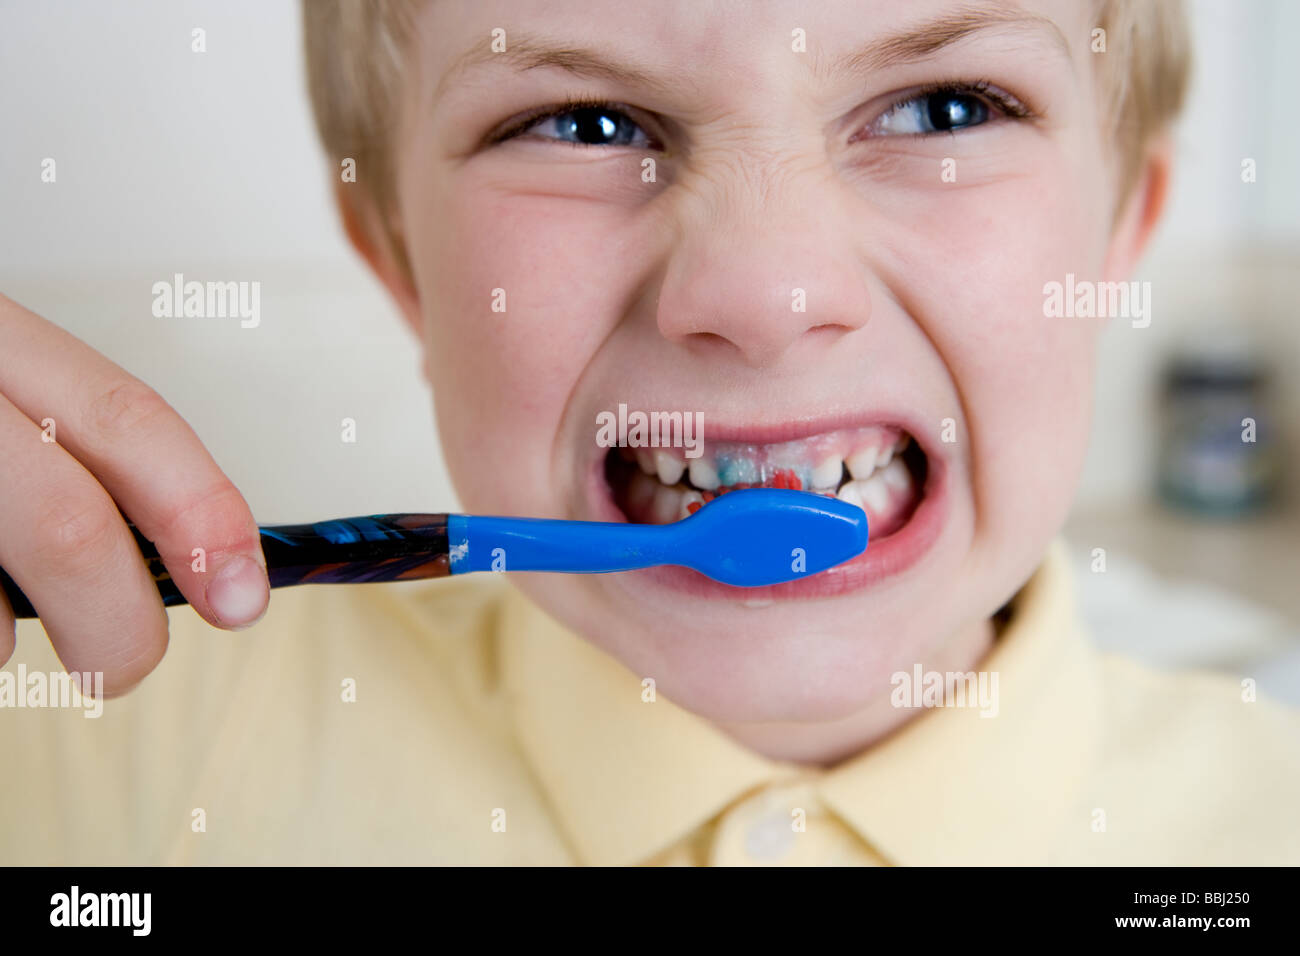 Teeth cleaning fan photo